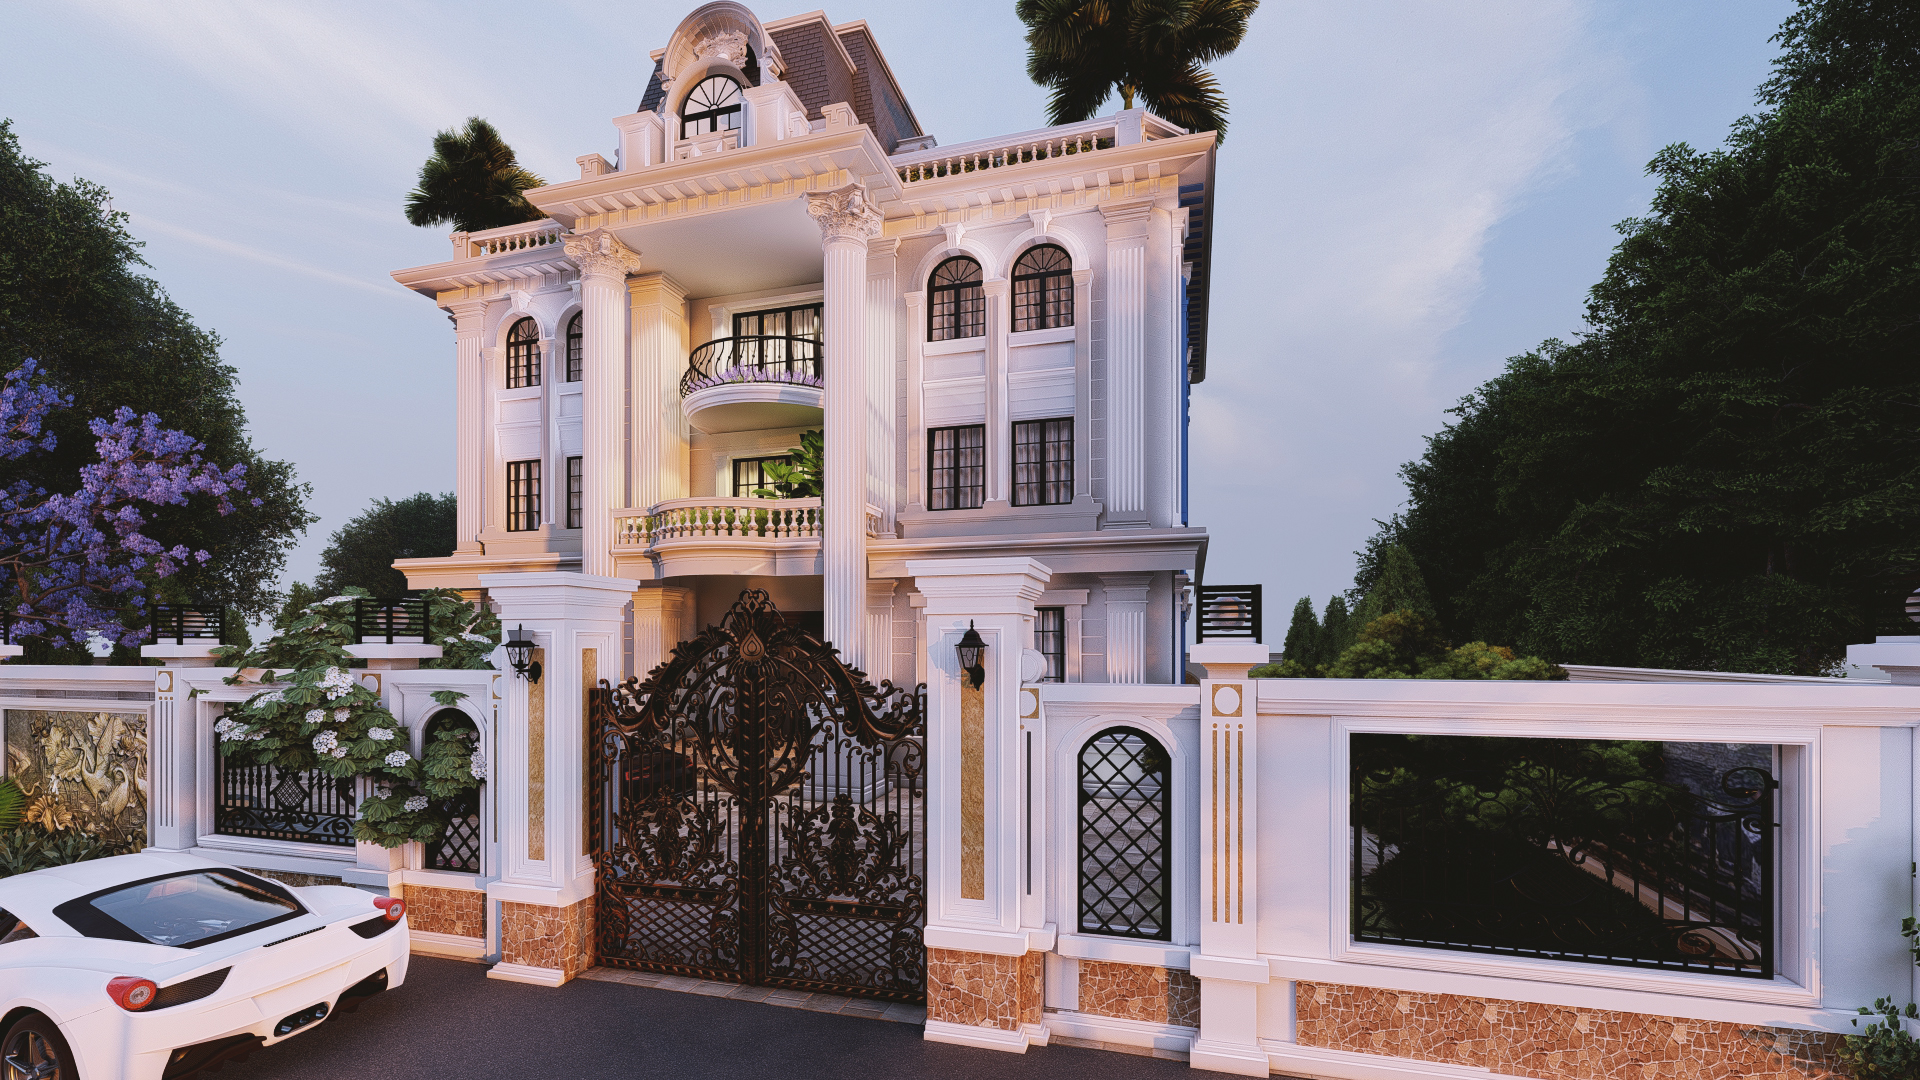 Thiết kế Biệt Thự tại Lâm Đồng BIỆT THỰ TÂN CỔ ĐIỂN 1605775426 6